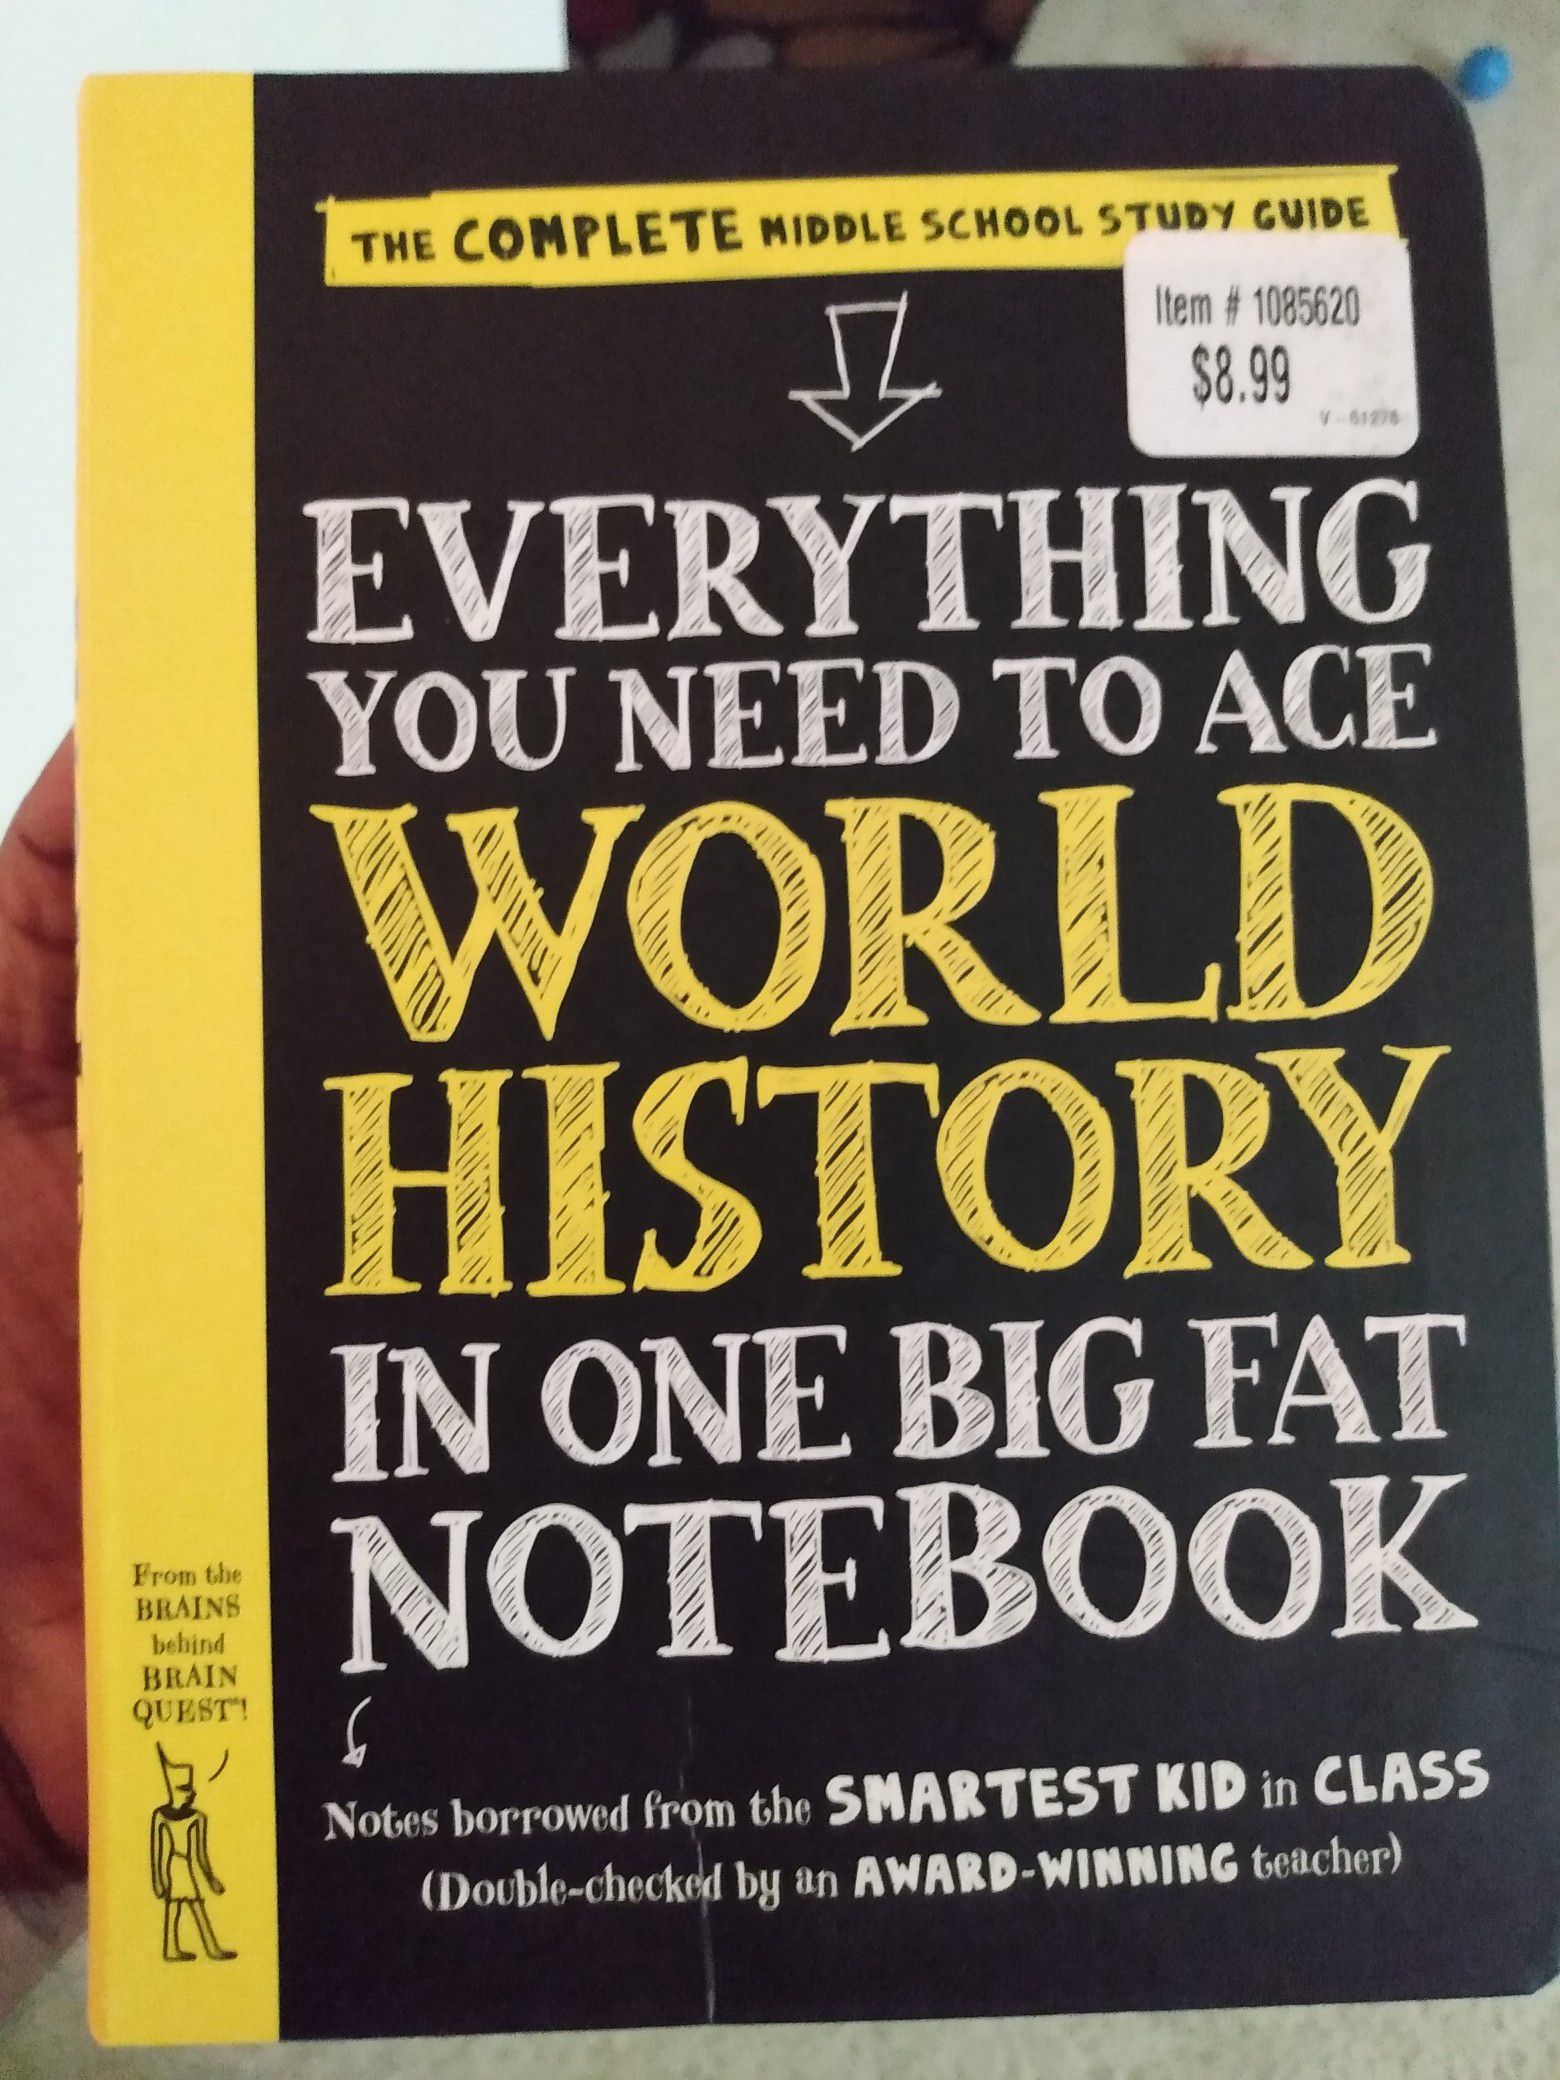 Big fat notebook history